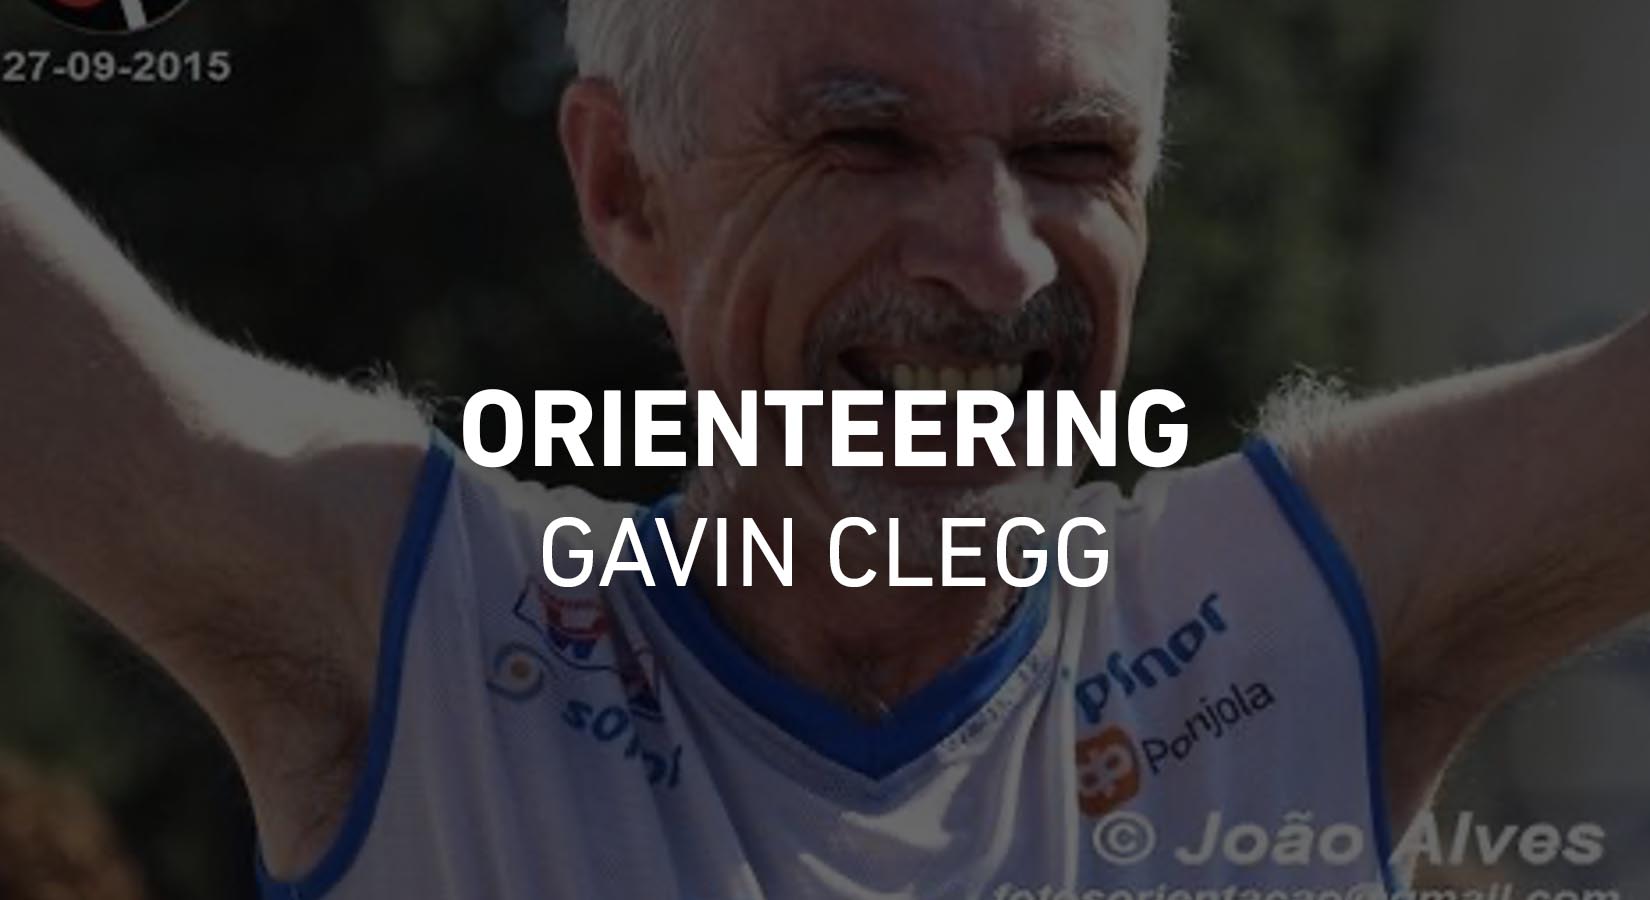 Orienteering - Gavin Clegg